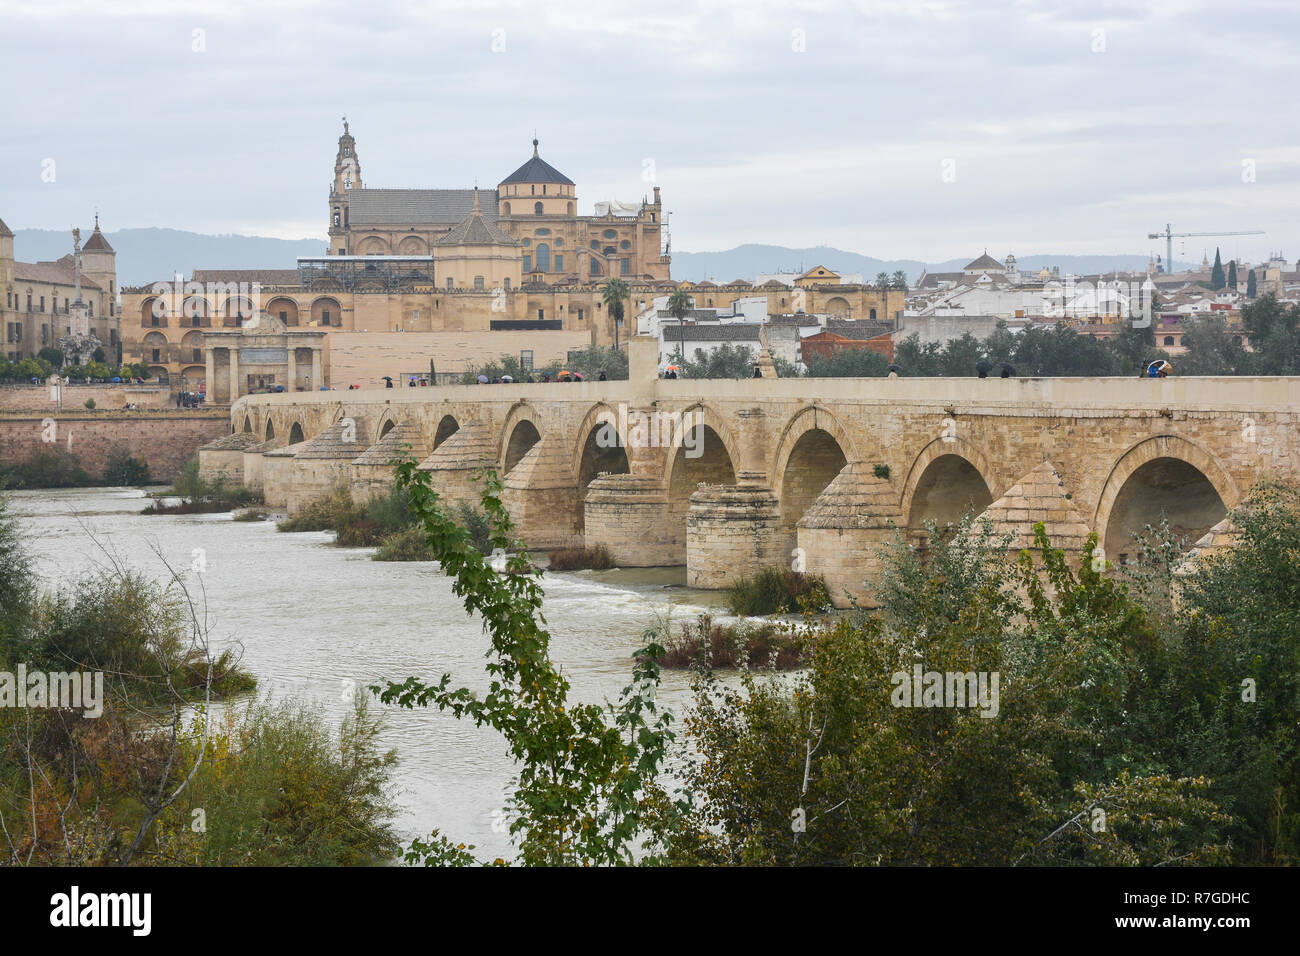 Römische Brücke über den Guadalquivir und Mesquite in Cordoba. Herbst Landschaft Spaniens, Sehenswürdigkeiten Andalusiens. Stockfoto